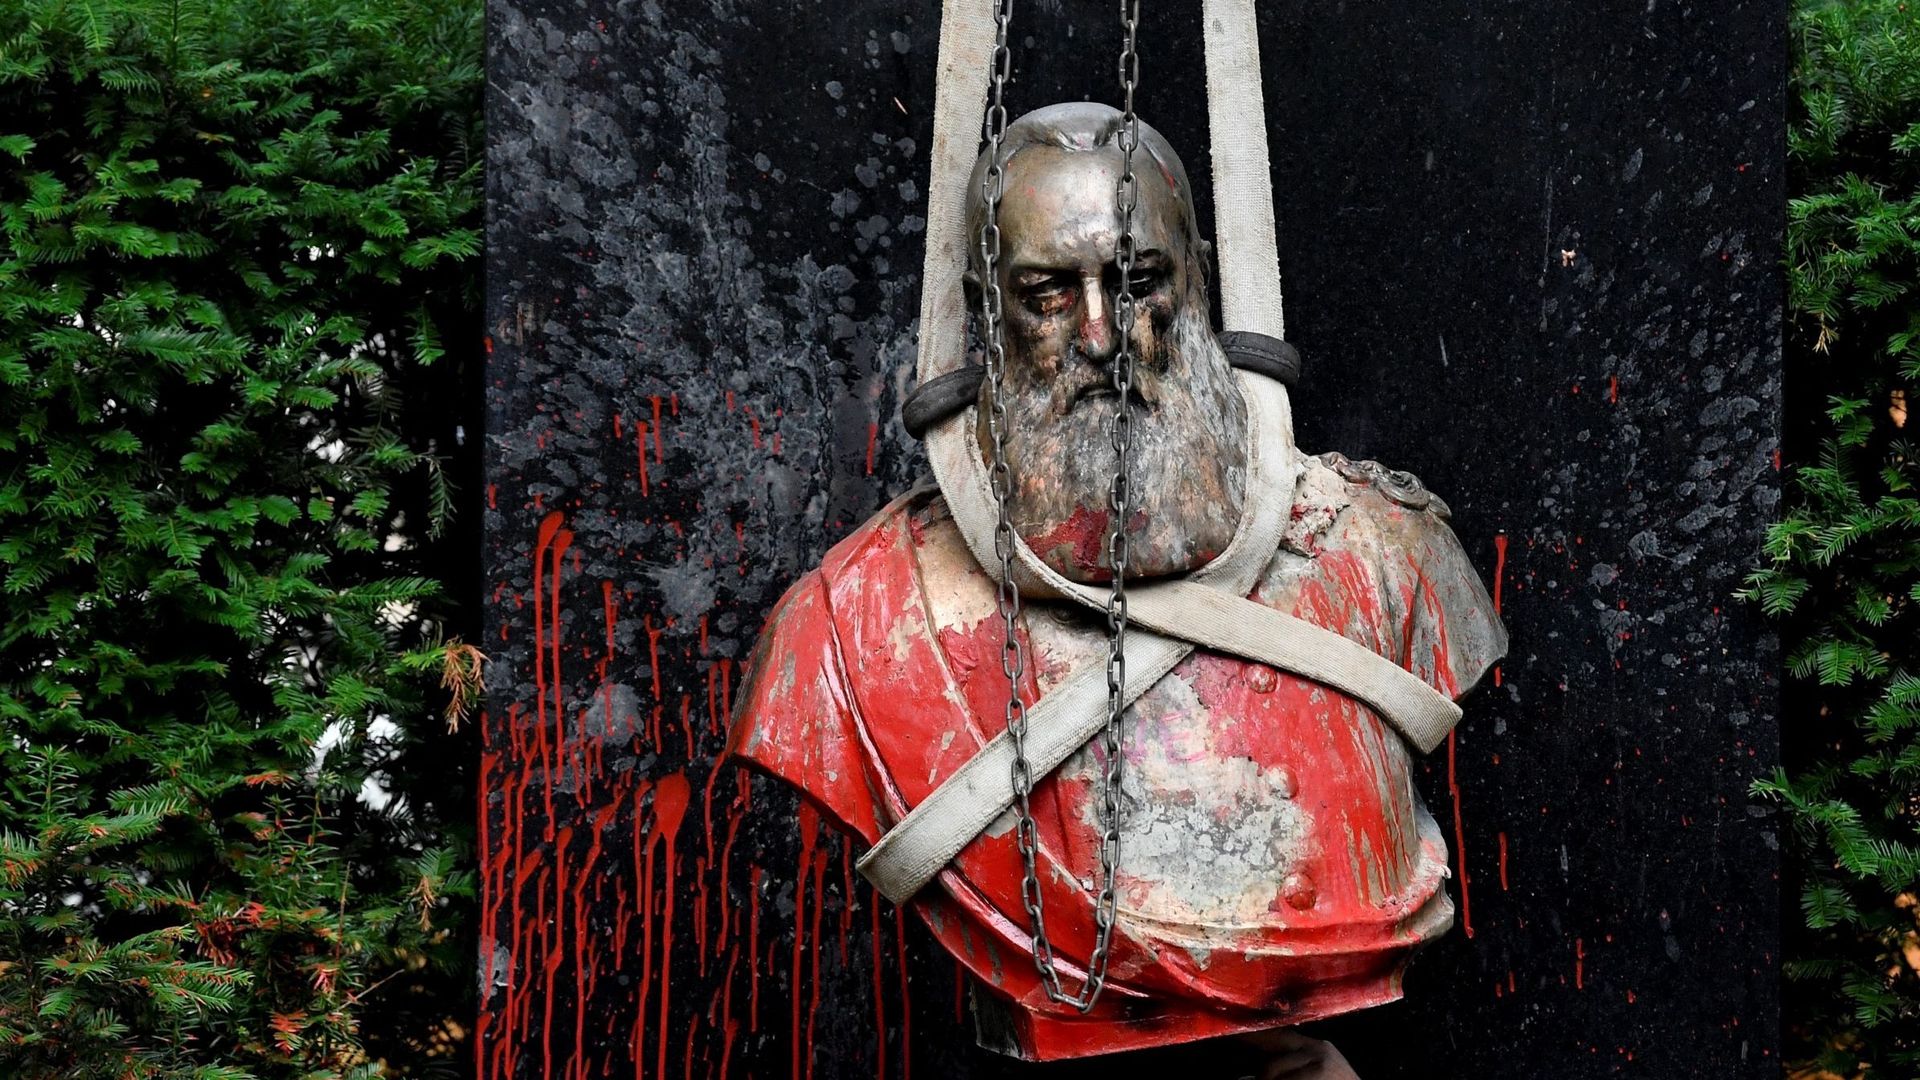 Un employé aide à retirer la statue vandalisée du roi Léopold II de Belgique alors que le pays s’apprête à célébrer le 60e anniversaire de l’indépendance du Congo, à Gand, le 30 juin 2020. La statue a été vandalisée lors d’une action de protestation au mi